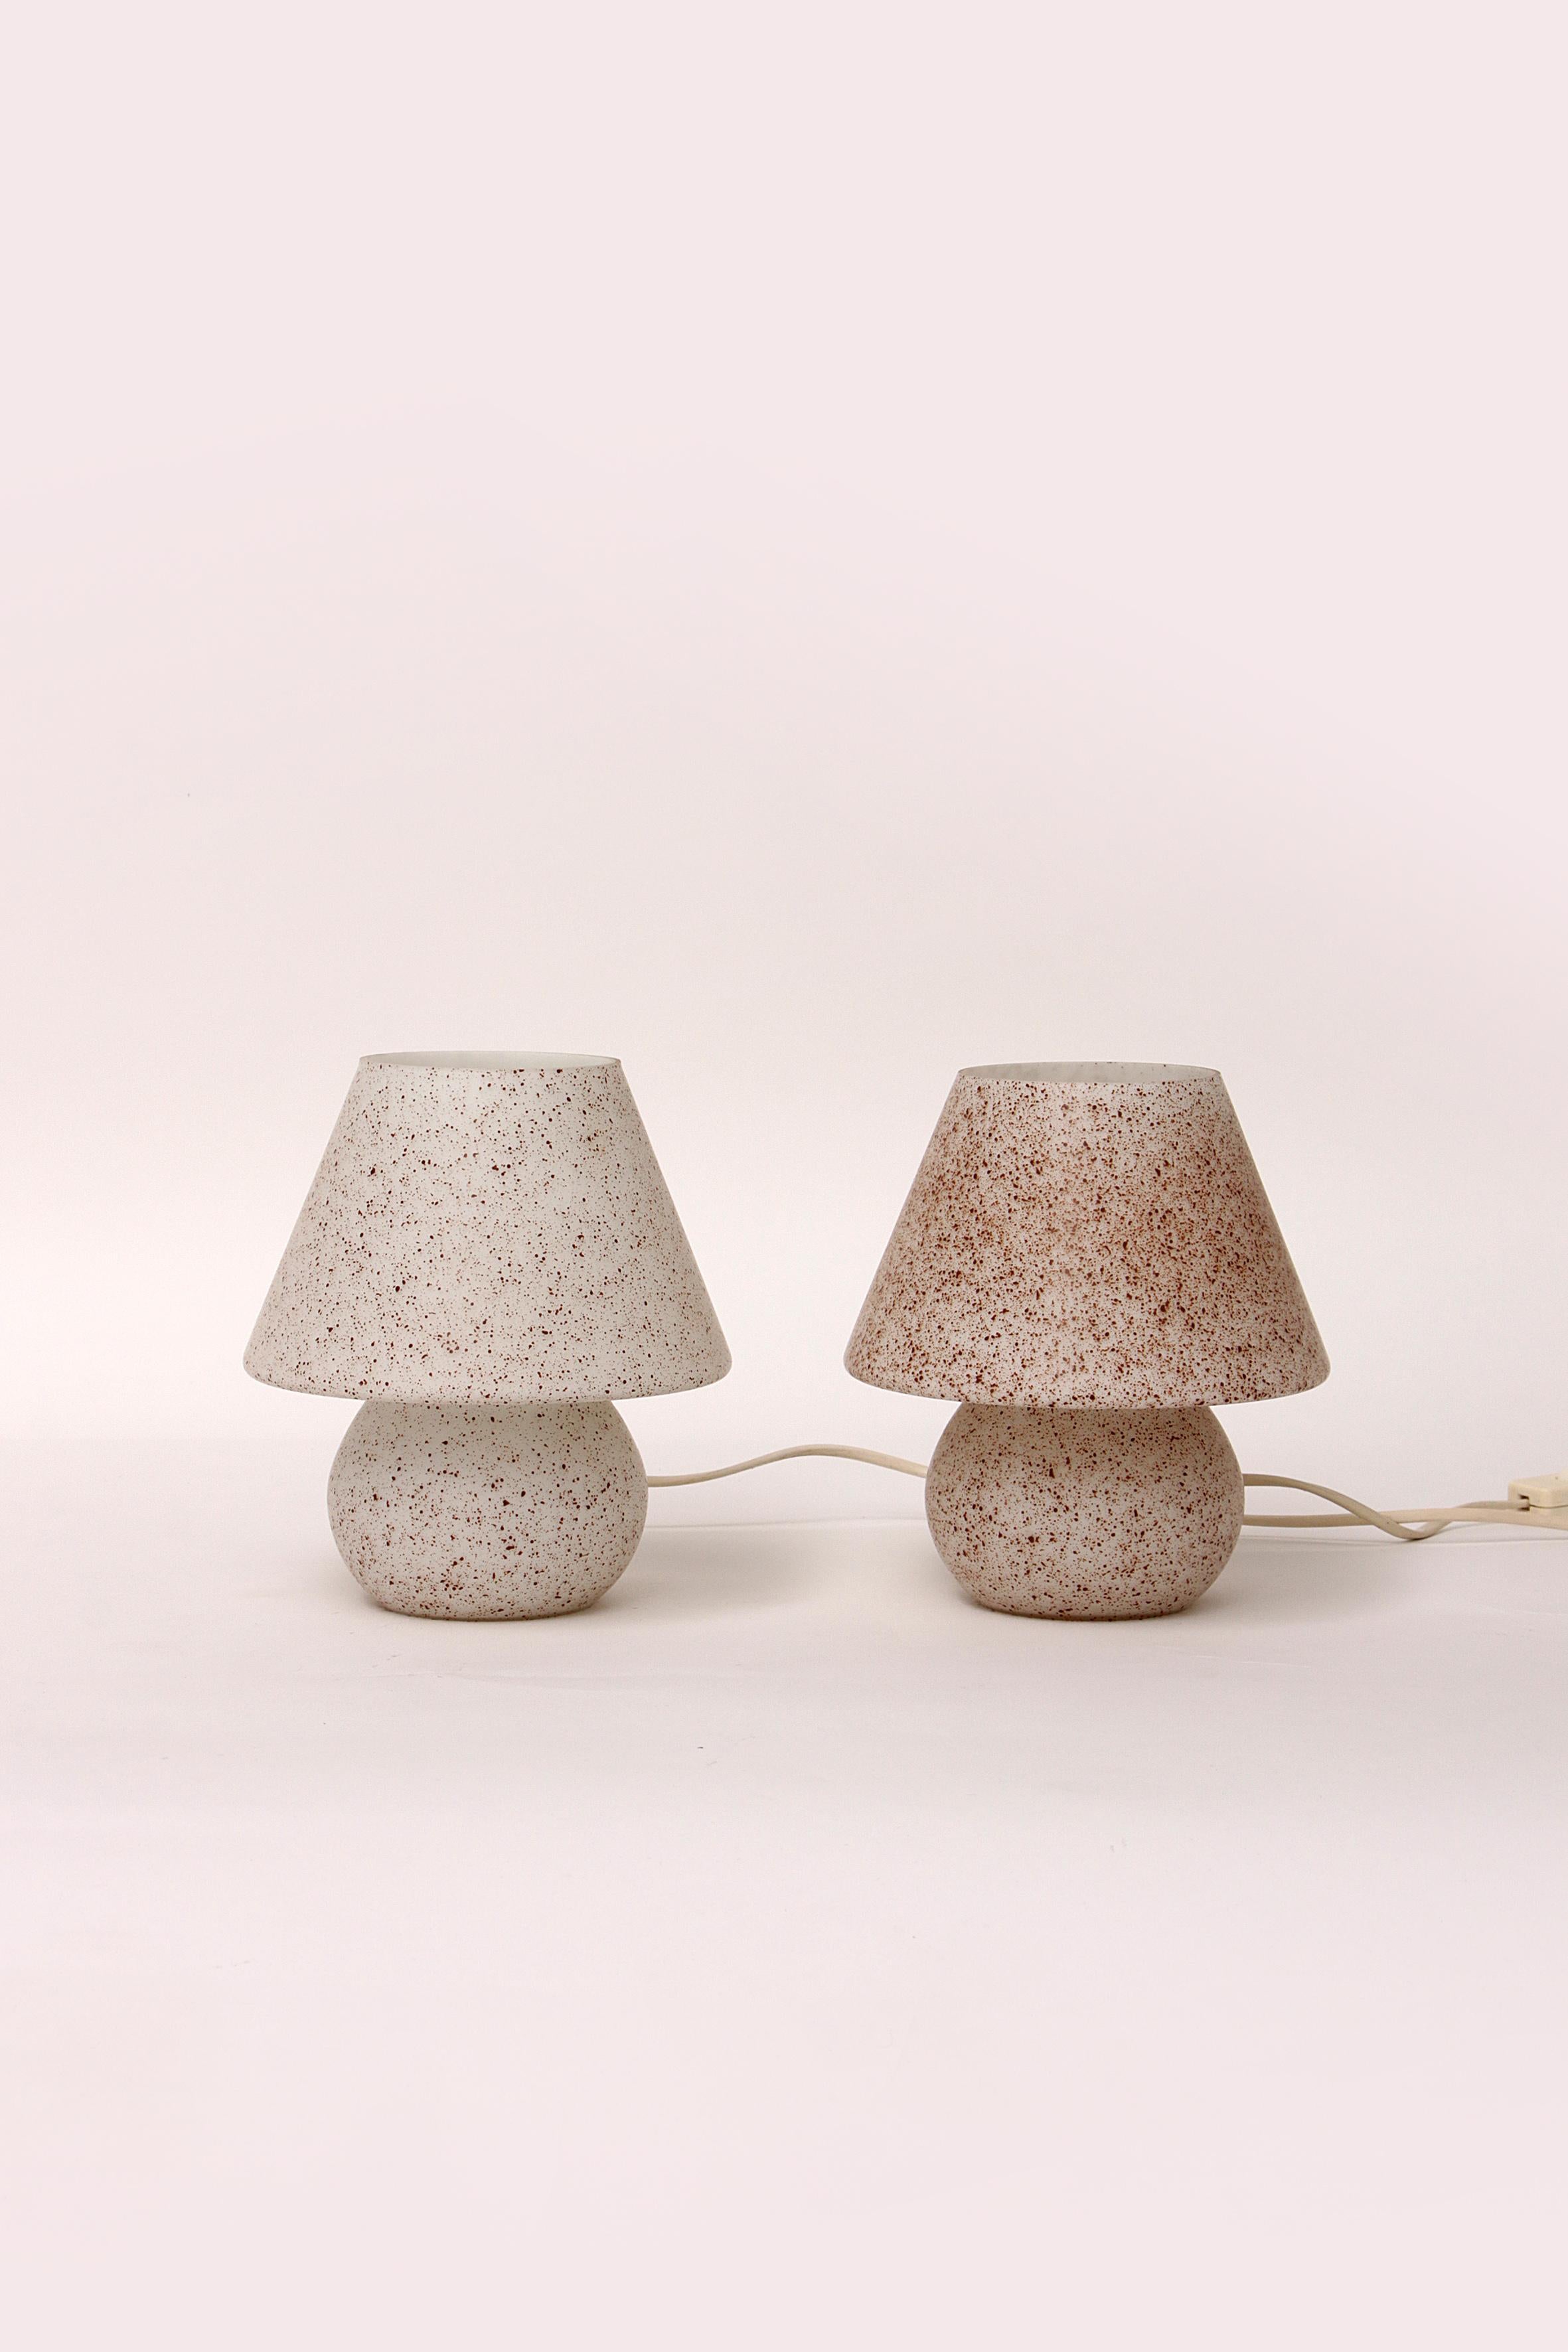 Dies sind 2 schöne Glas Pilz oder Champignon Tischlampen mit Schalter ideal als Nachttischlampen aber auch schön in Ihrem Wohnzimmer.

In den e14-Glühbirnen befinden sich kleine Fassungen.

Es gibt eine schöne braune Sprenkelung auf dem Glas, wenn